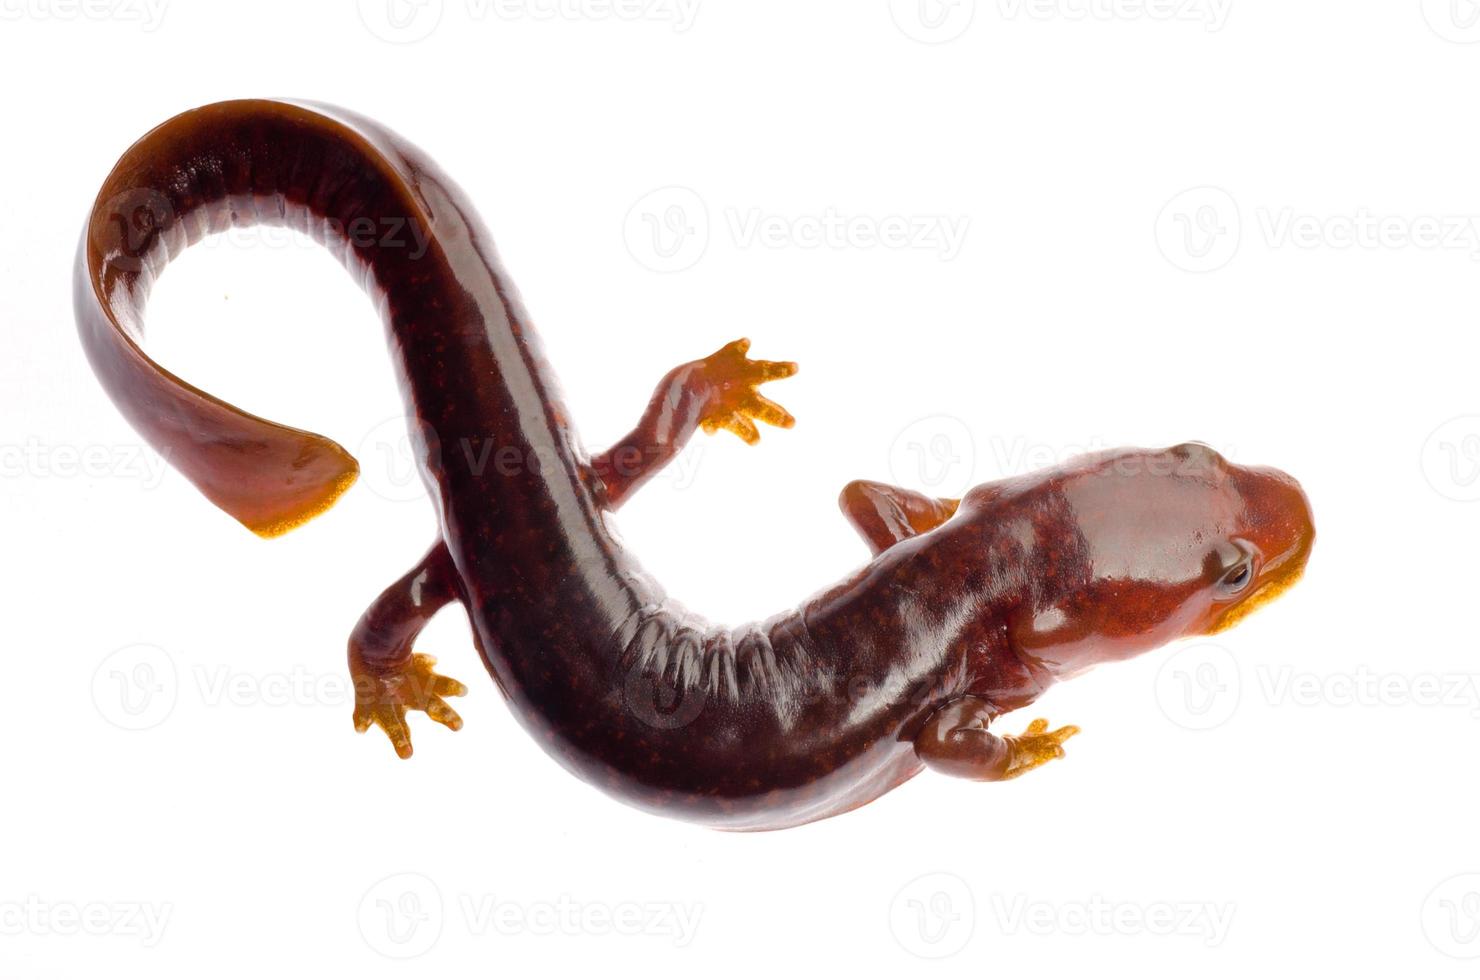 triton salamandre tsitou chinois photo